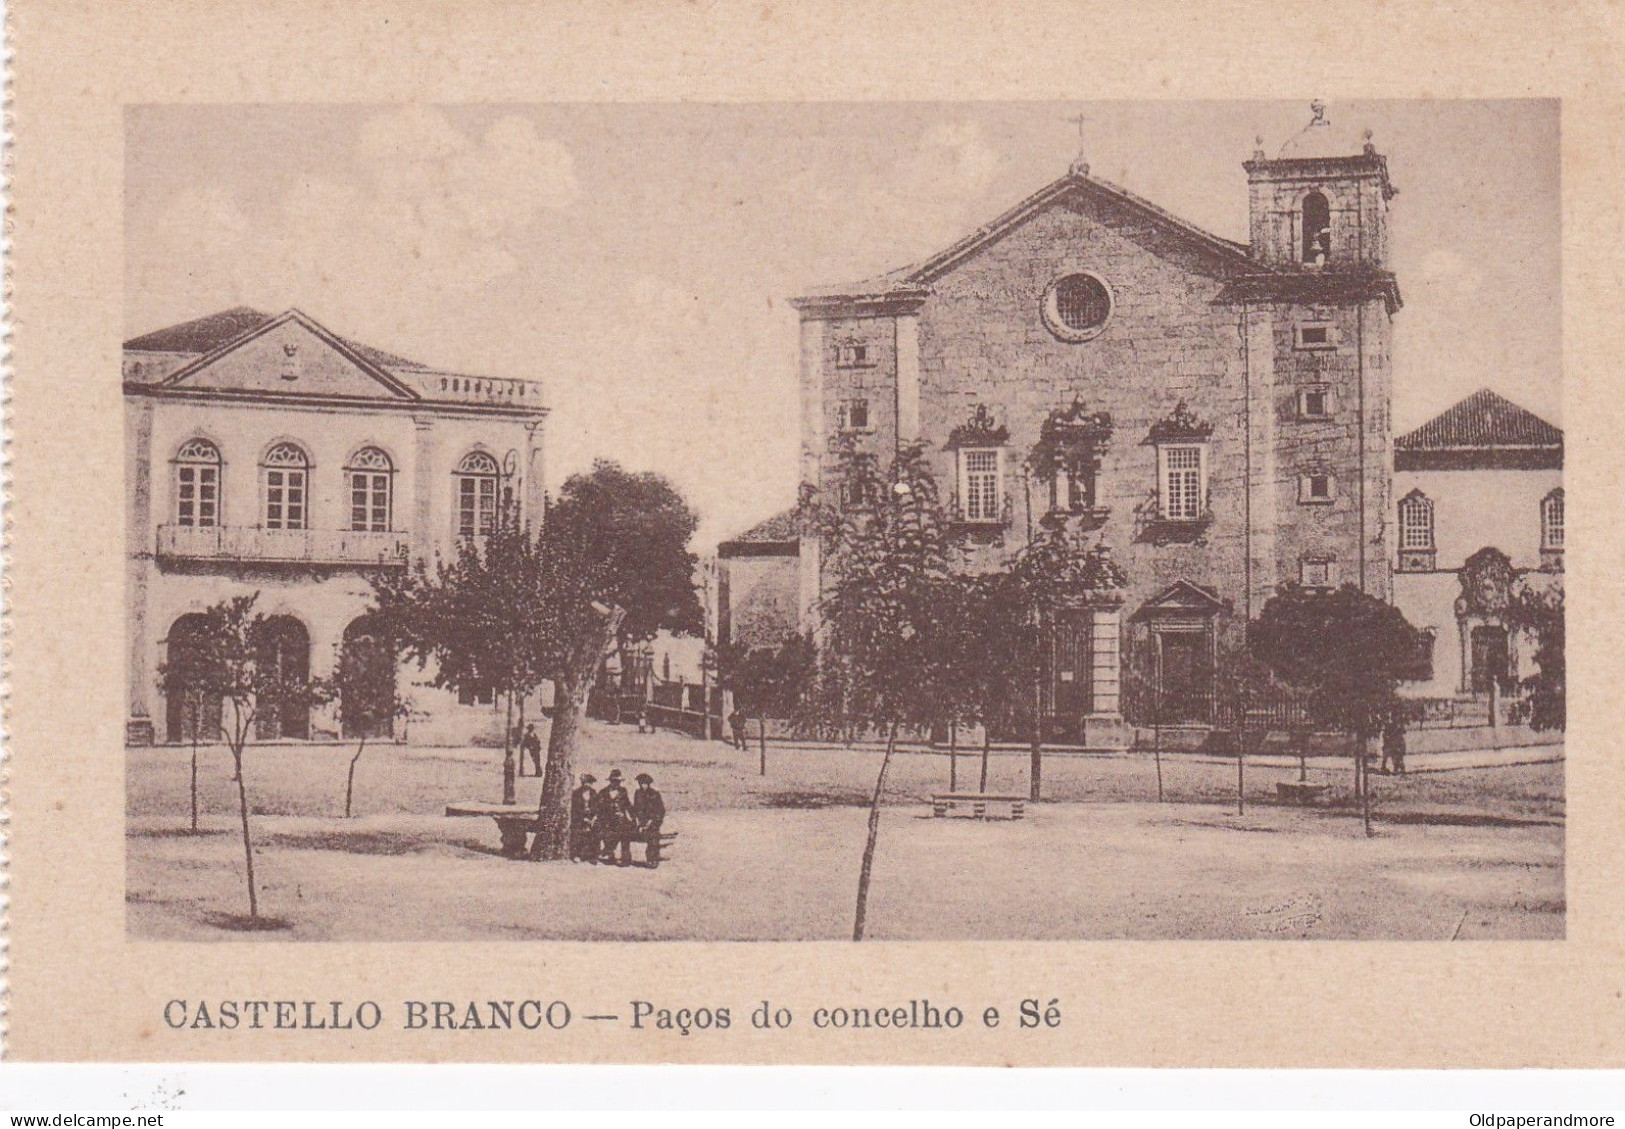 POSTCARD PORTUGAL - CASTELO BRANCO - PAÇOS DO CONCELHO E SÉ - Castelo Branco